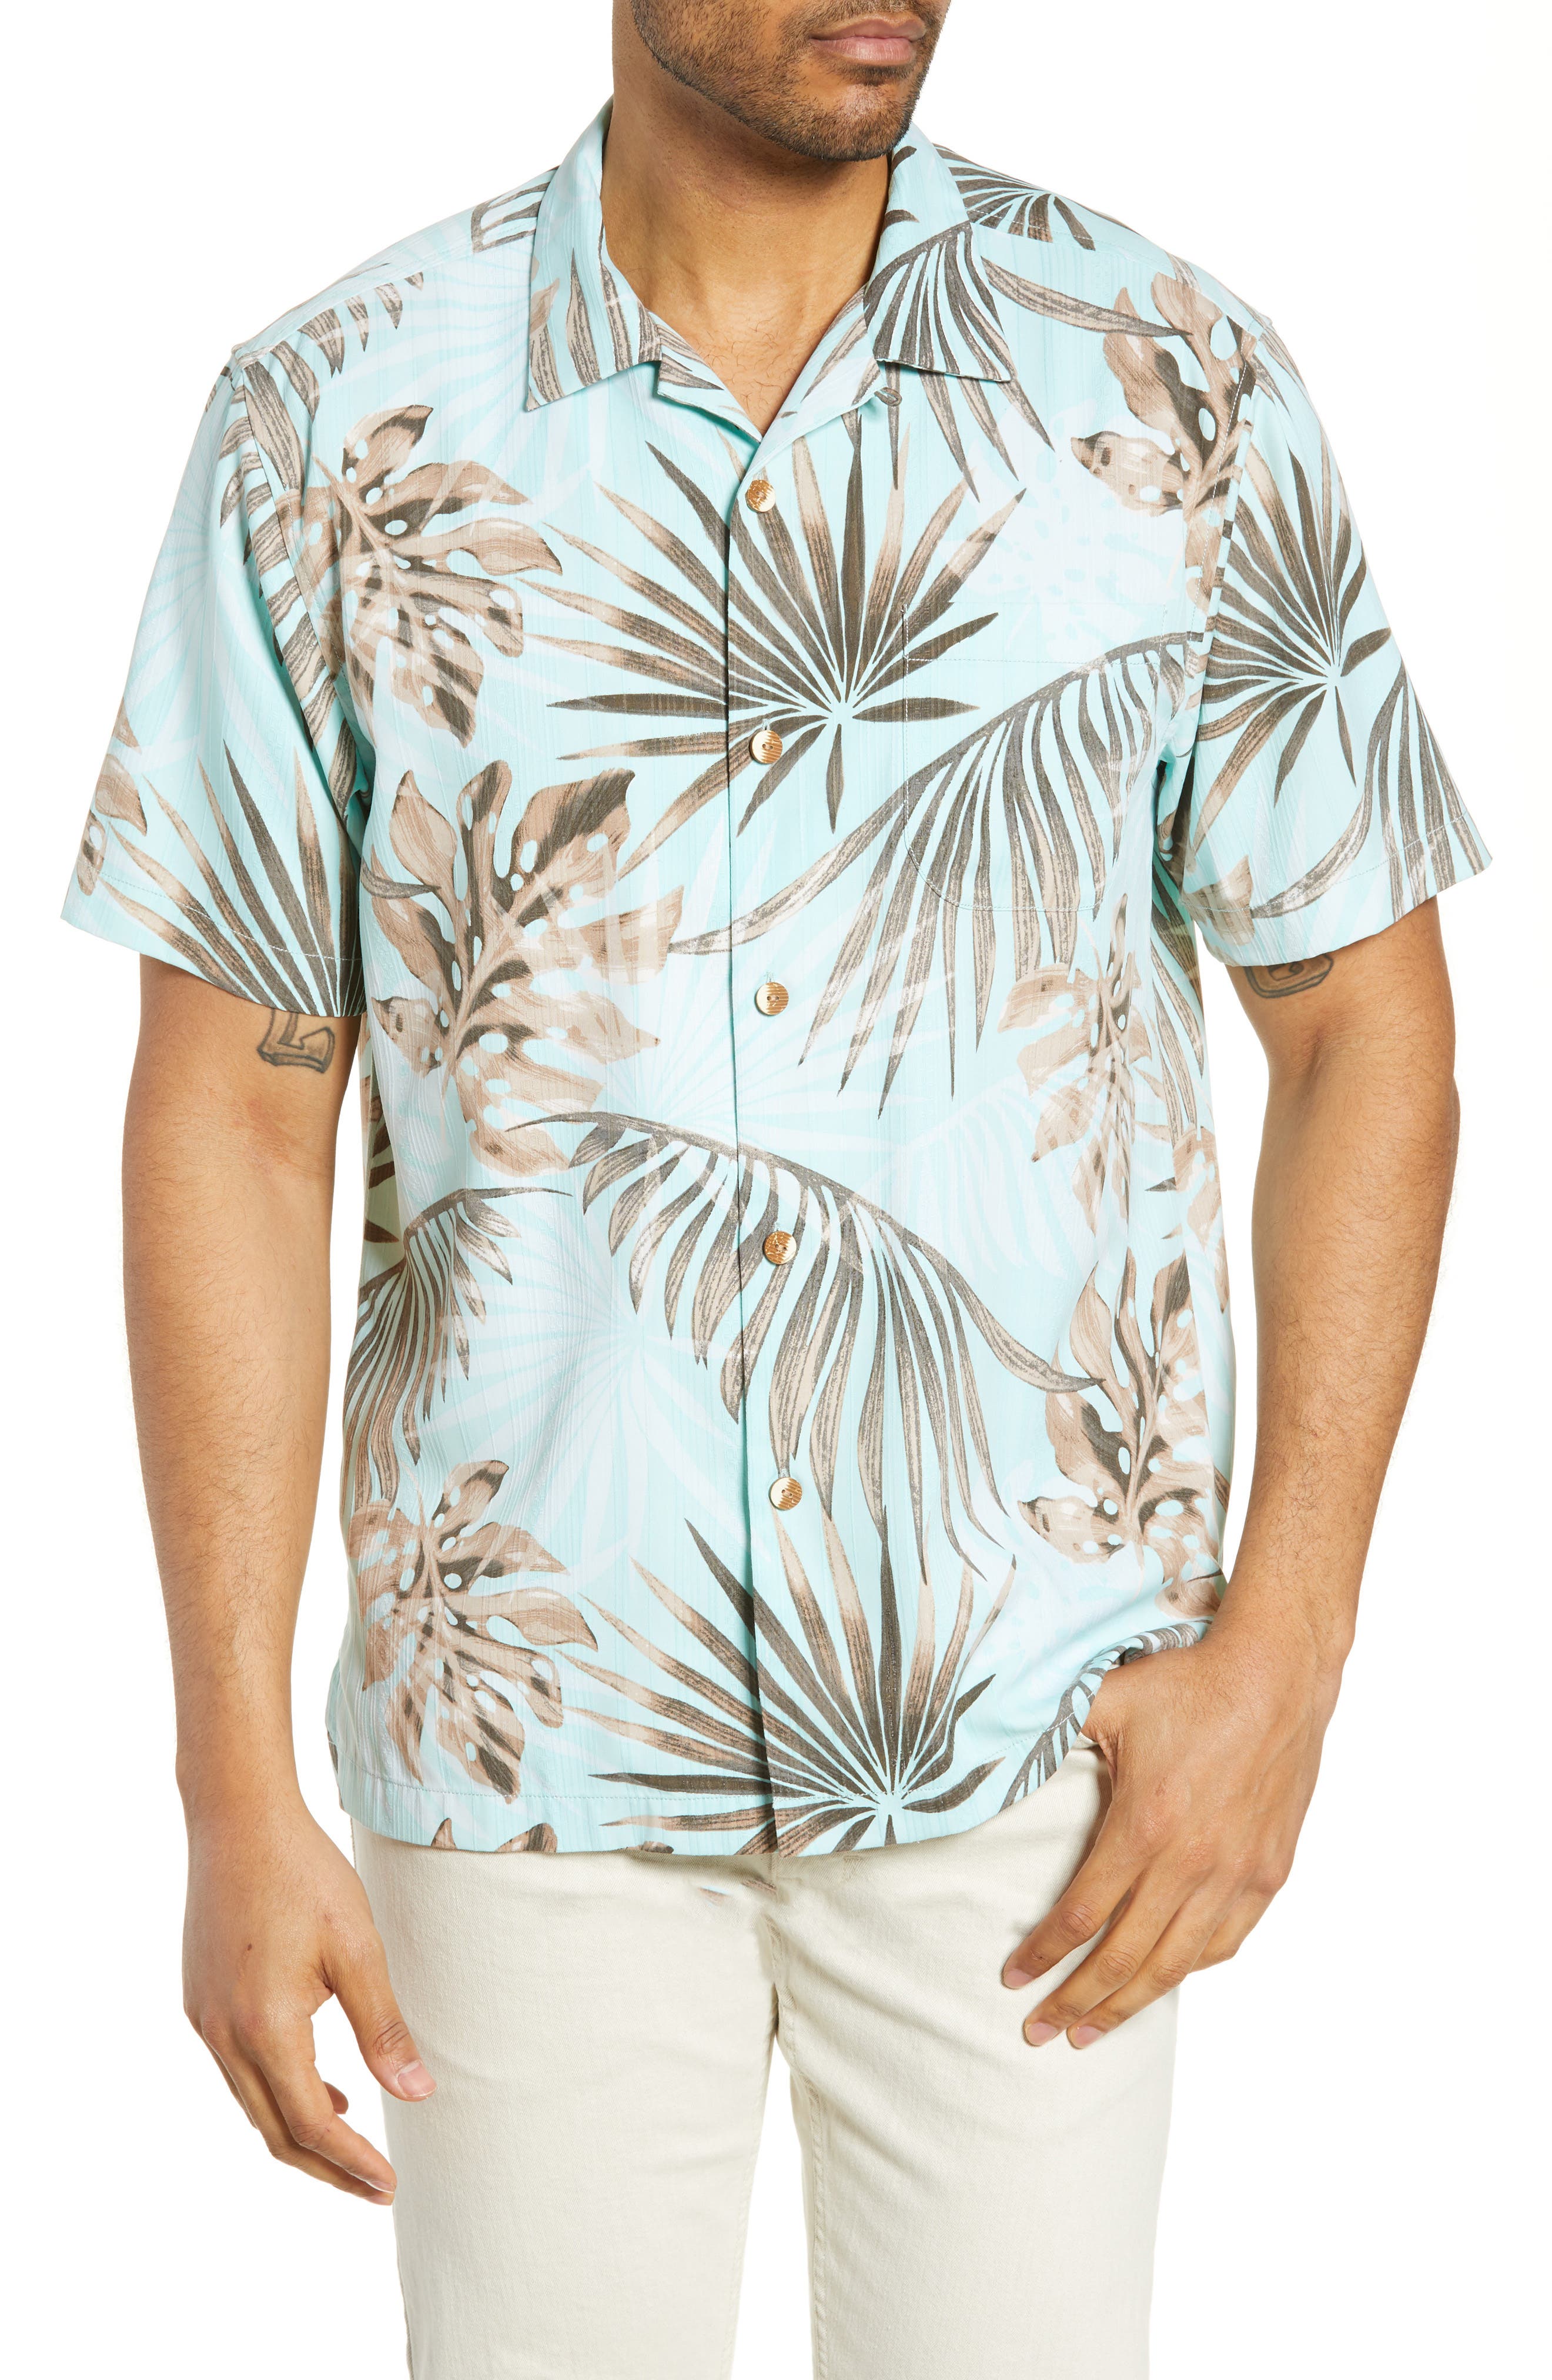 tommy bahama shirts canada